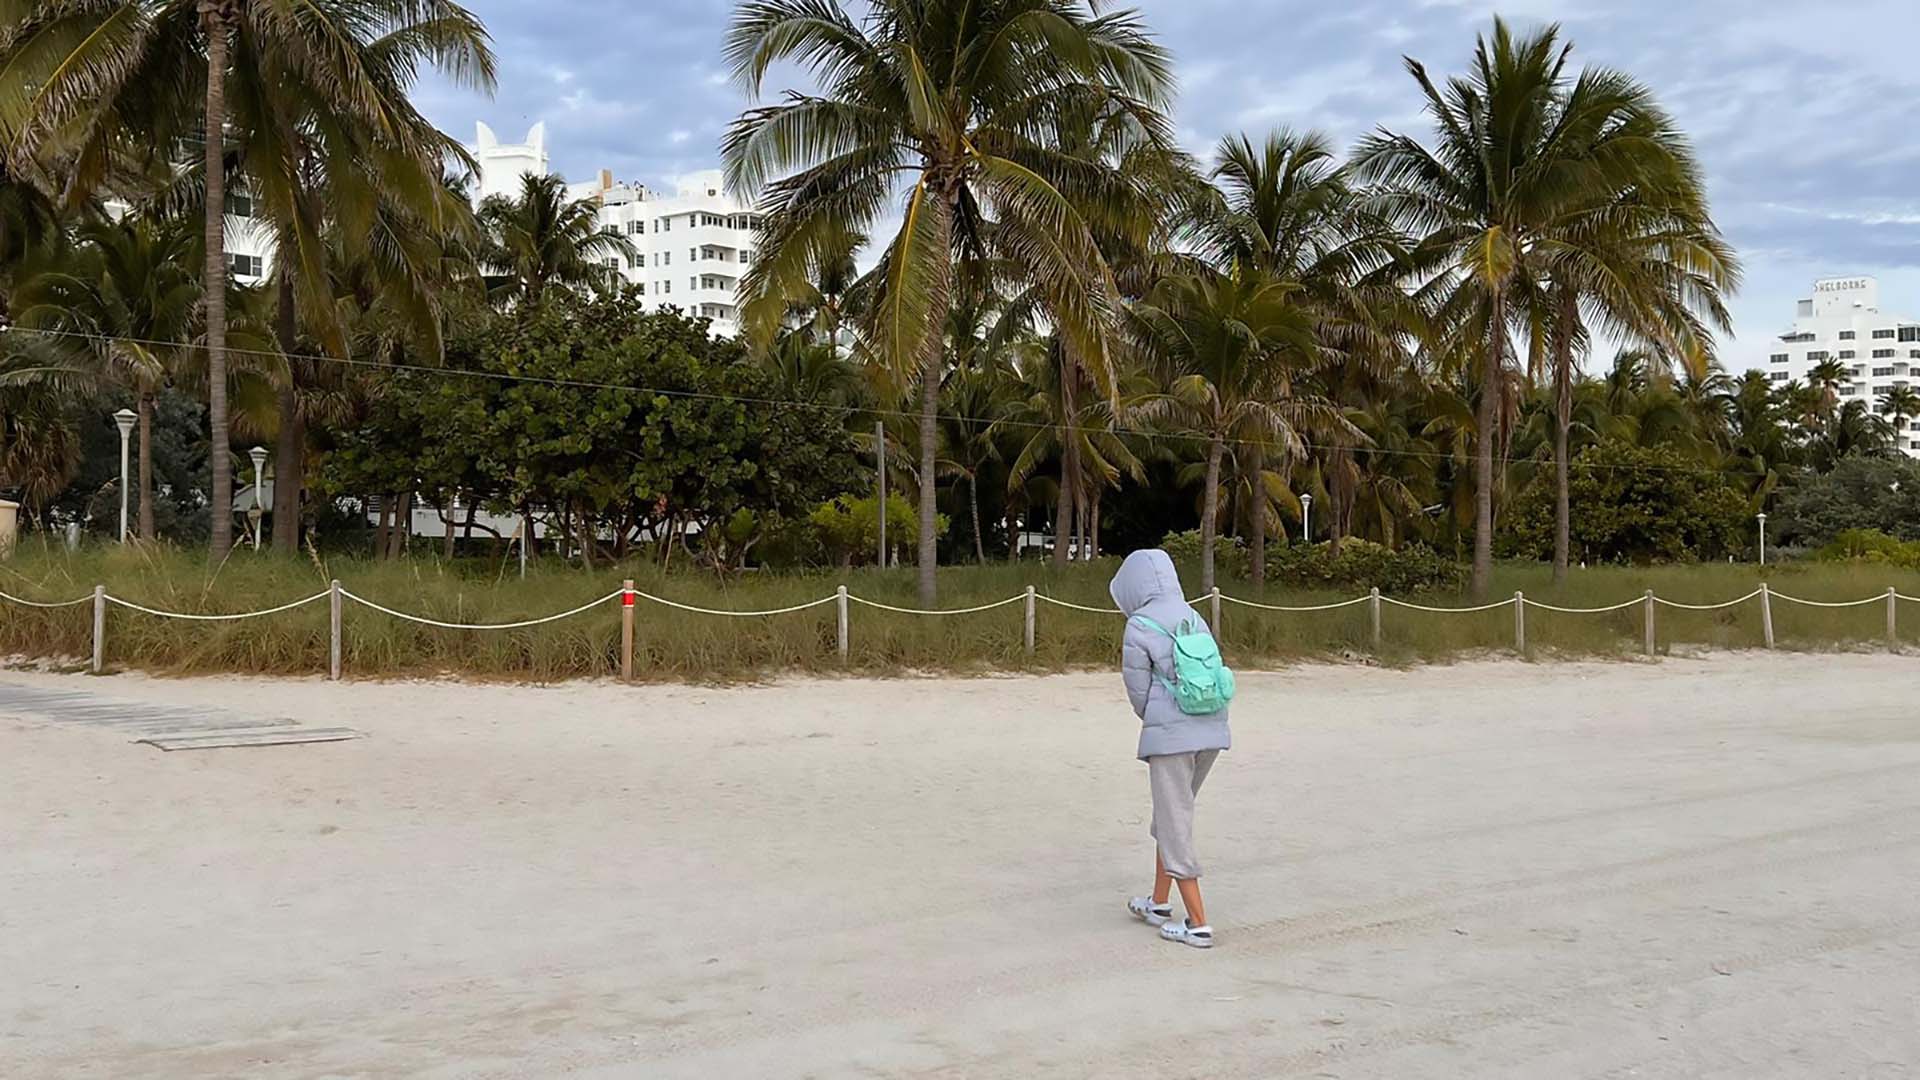 Le spiagge disabitate di Miami (Foto: Opy Morles)